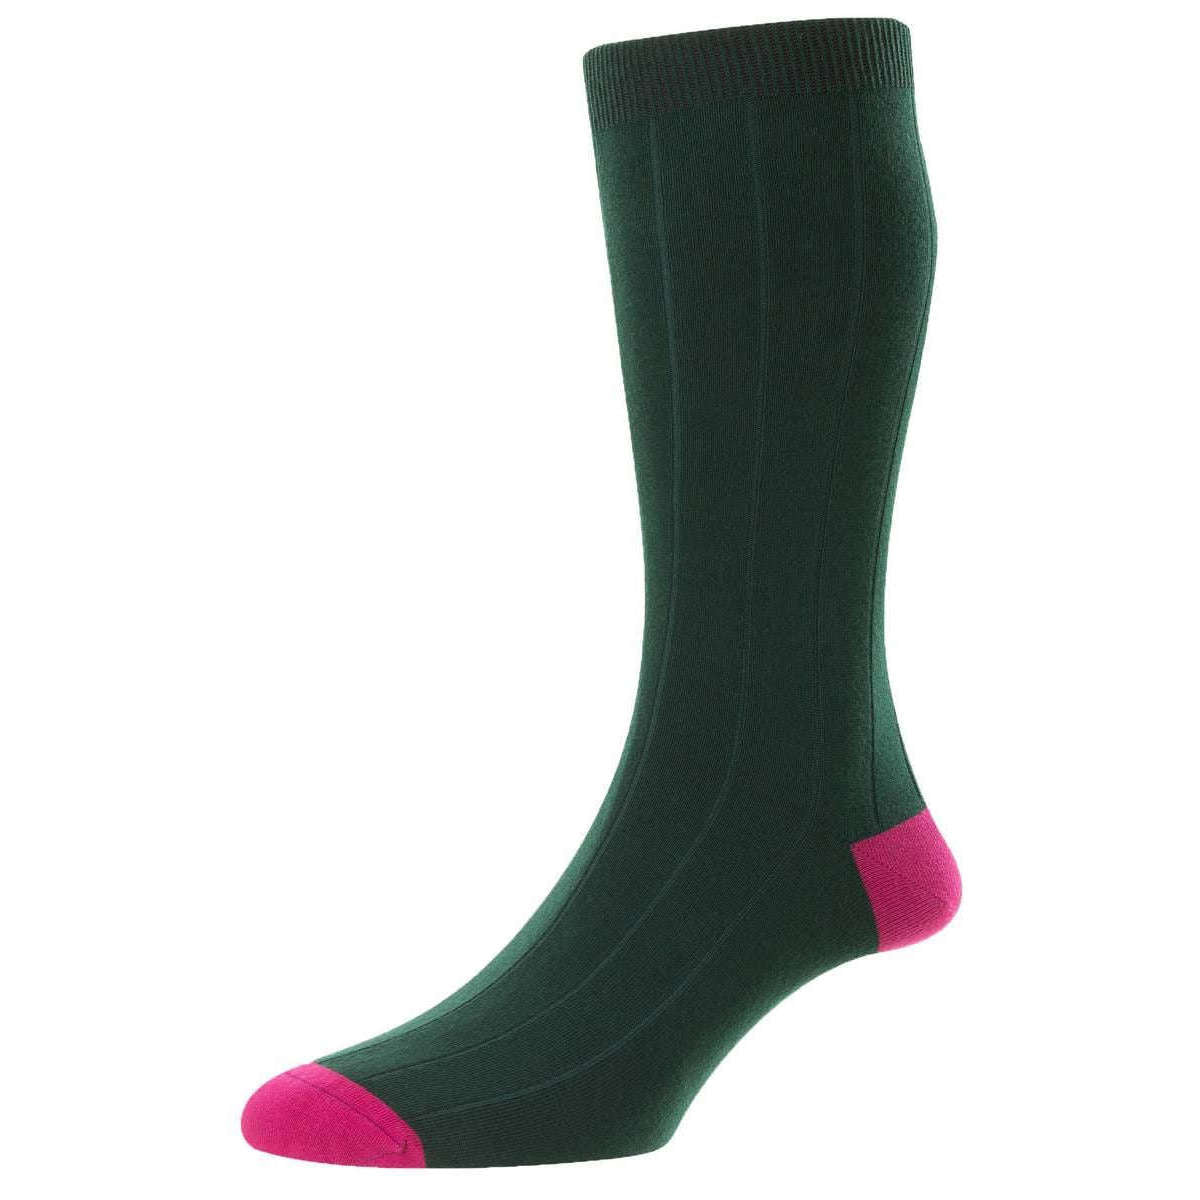 Scott Nichol Burford Organic Cotton Socks - New Conifer Green